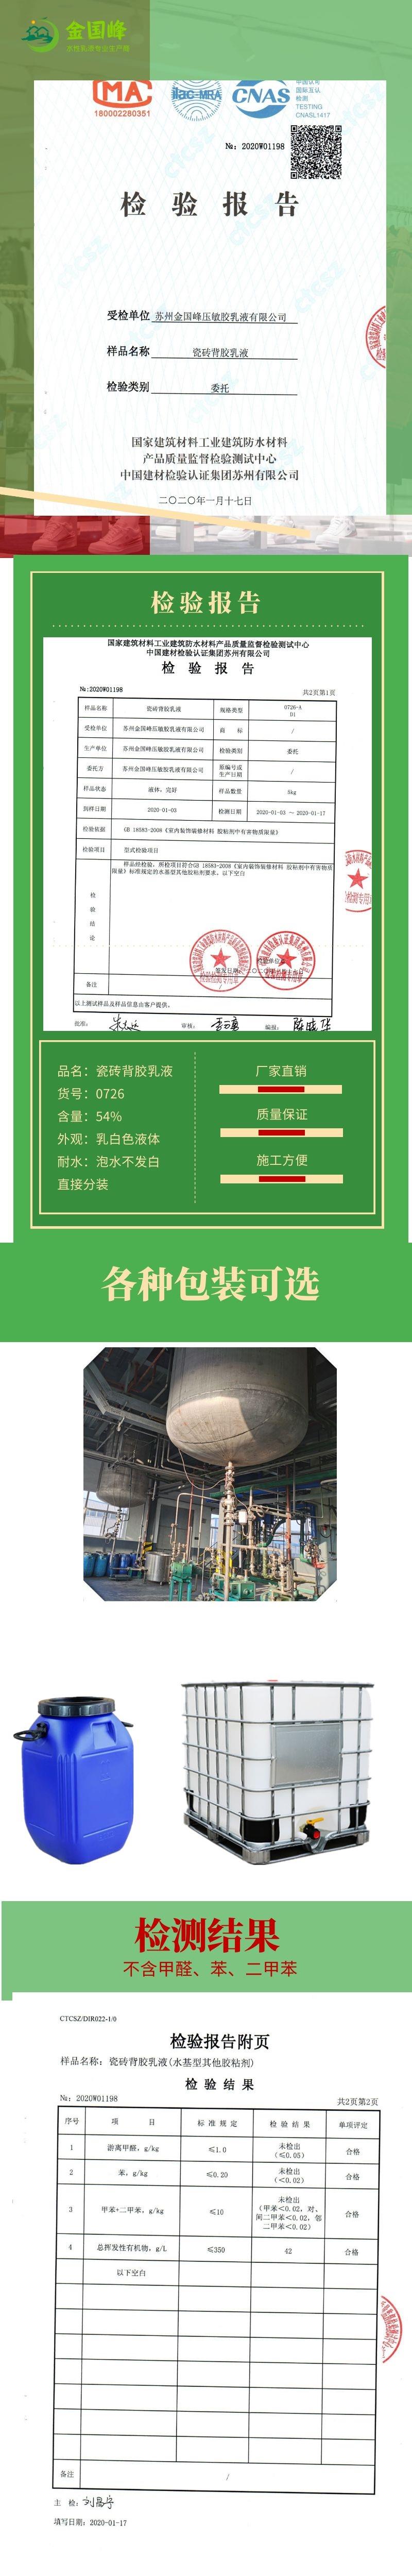 惠州瓷砖背胶生产